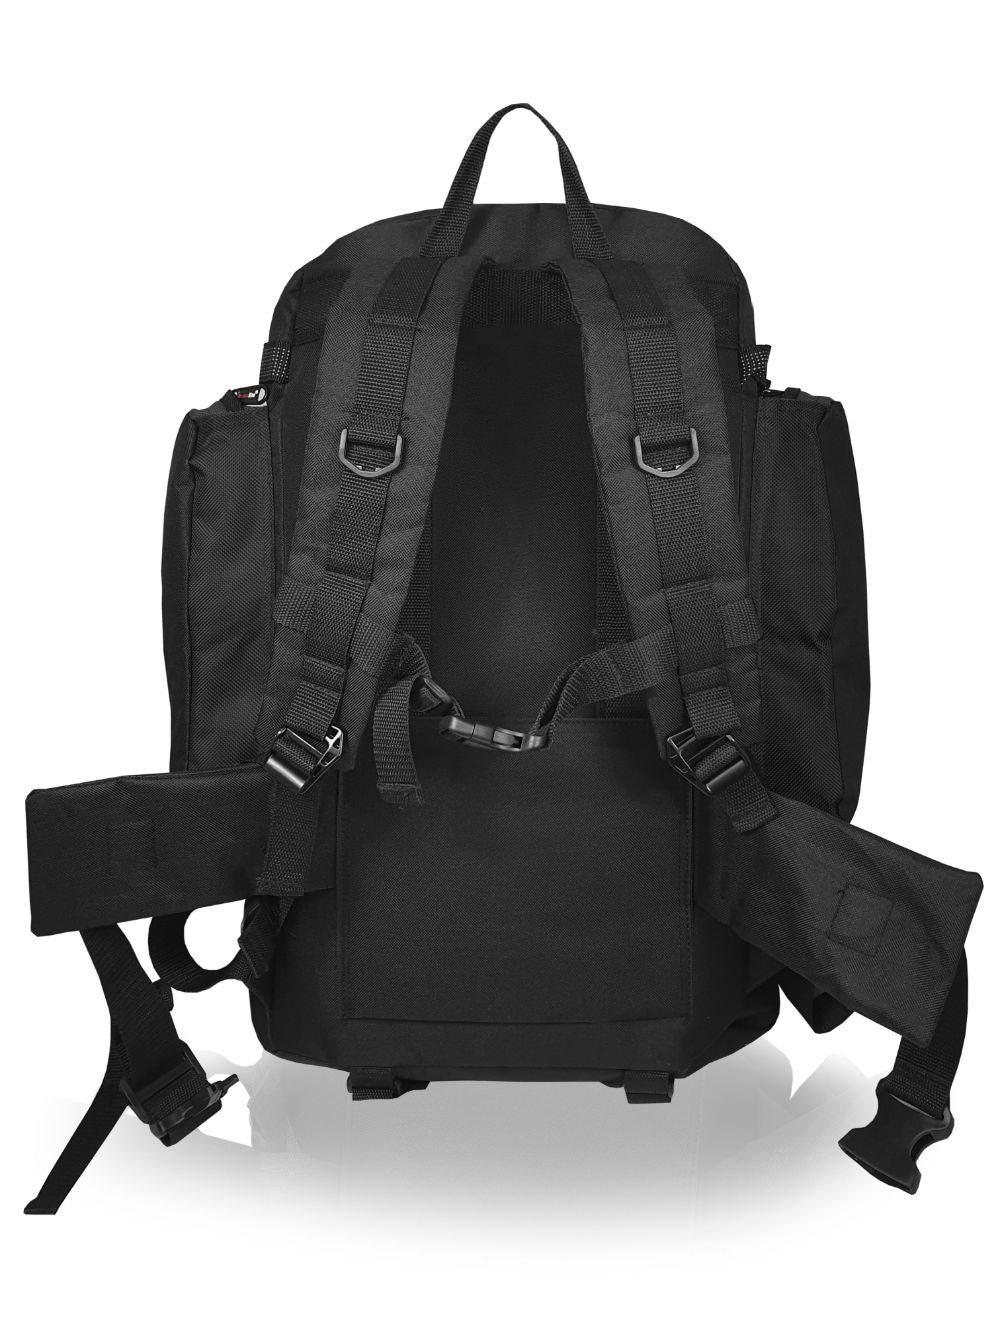 Roamlite Camping Backpack Black Polyester RL55  back